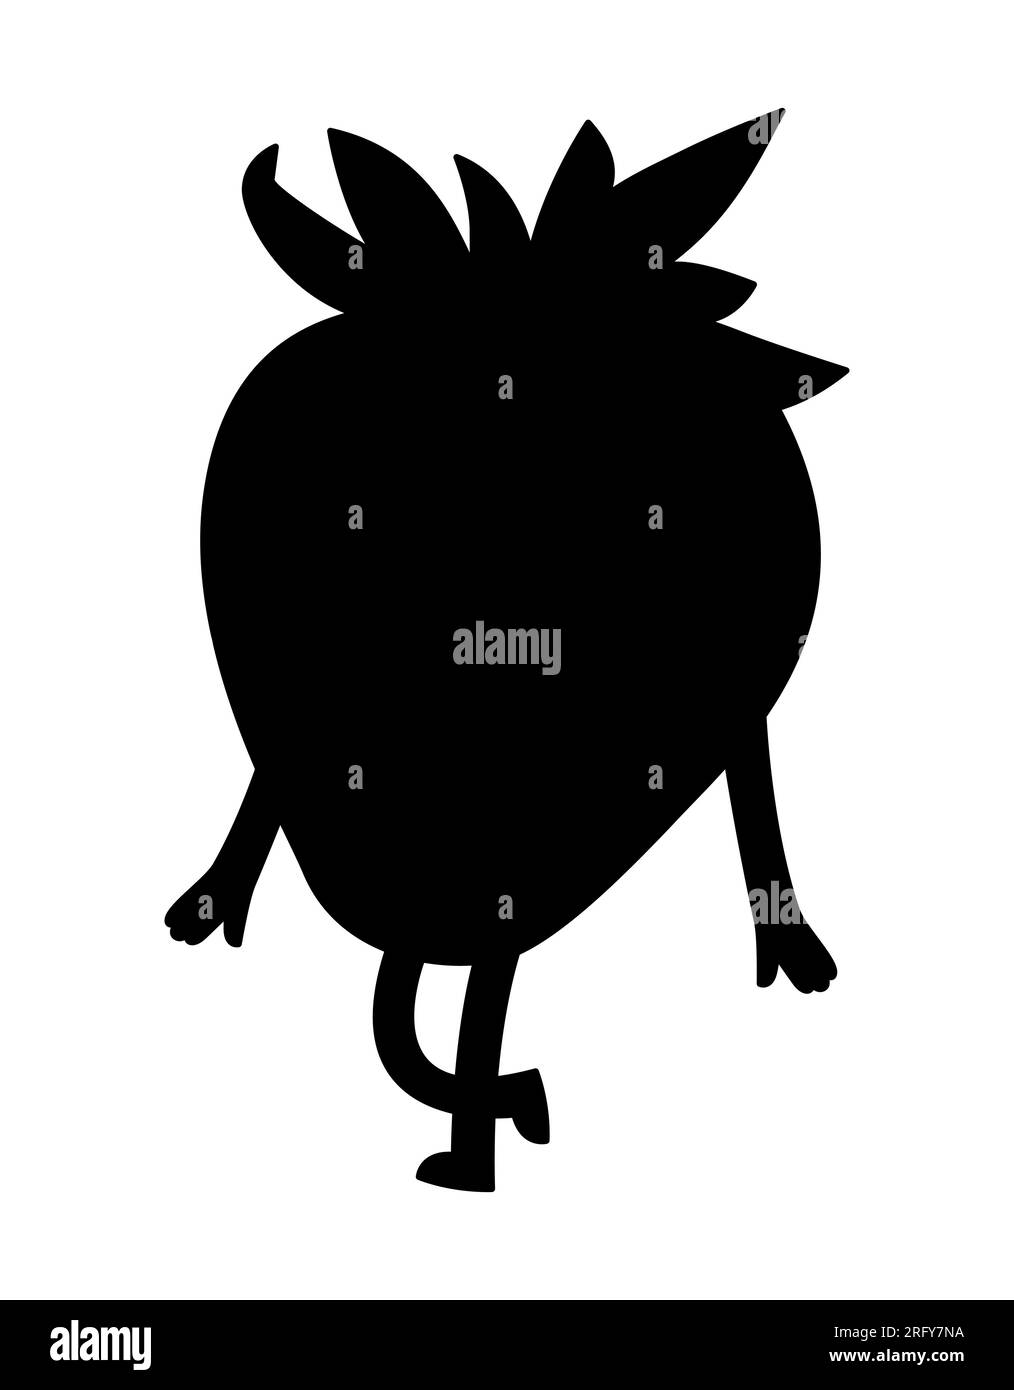 Personnage de fruit de fraise de dessin animé avec les mains et les jambes, logo d'alimentation saine, caractère vecteur de fruit d'été, silhouette Illustration de Vecteur